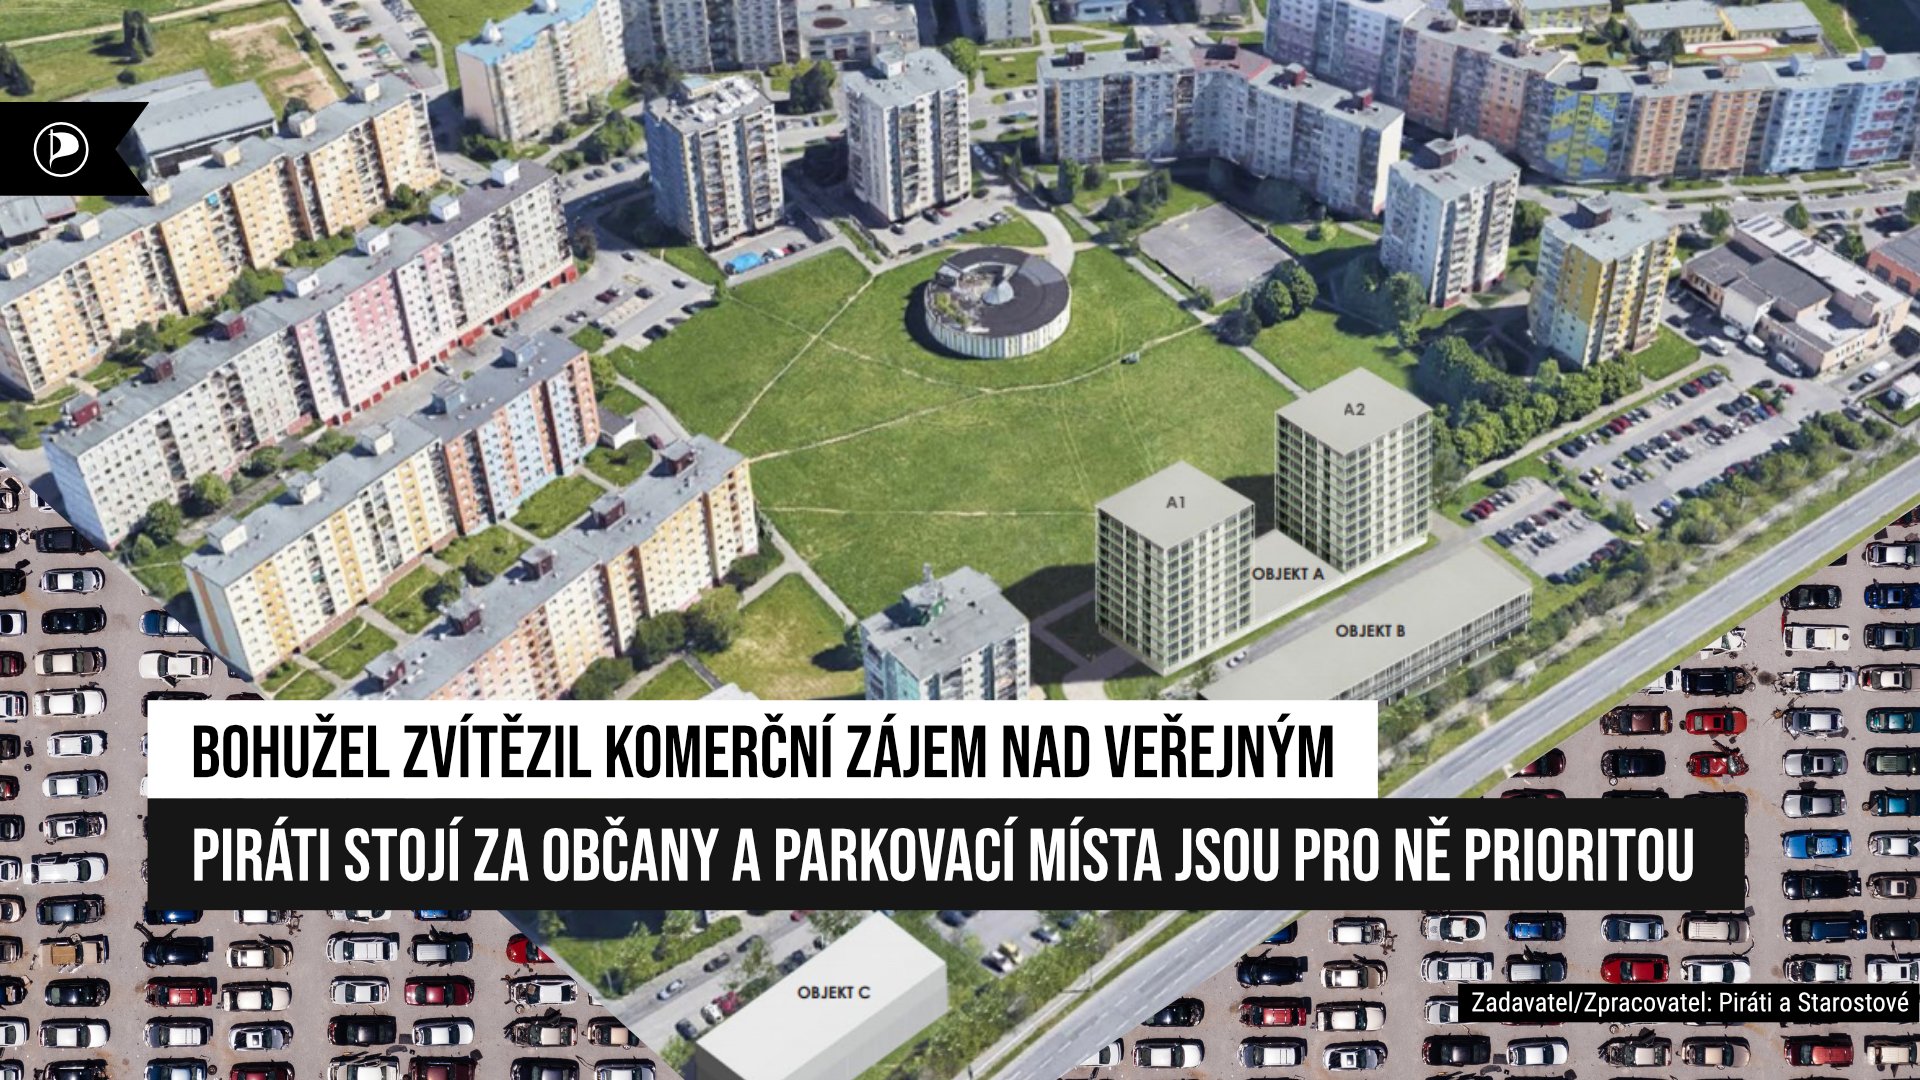 Projekt regenerace sídliště Plzeň – Košutka chybějící parkovací místa nevyřeší, zvítězil soukromý zájem nad veřejným